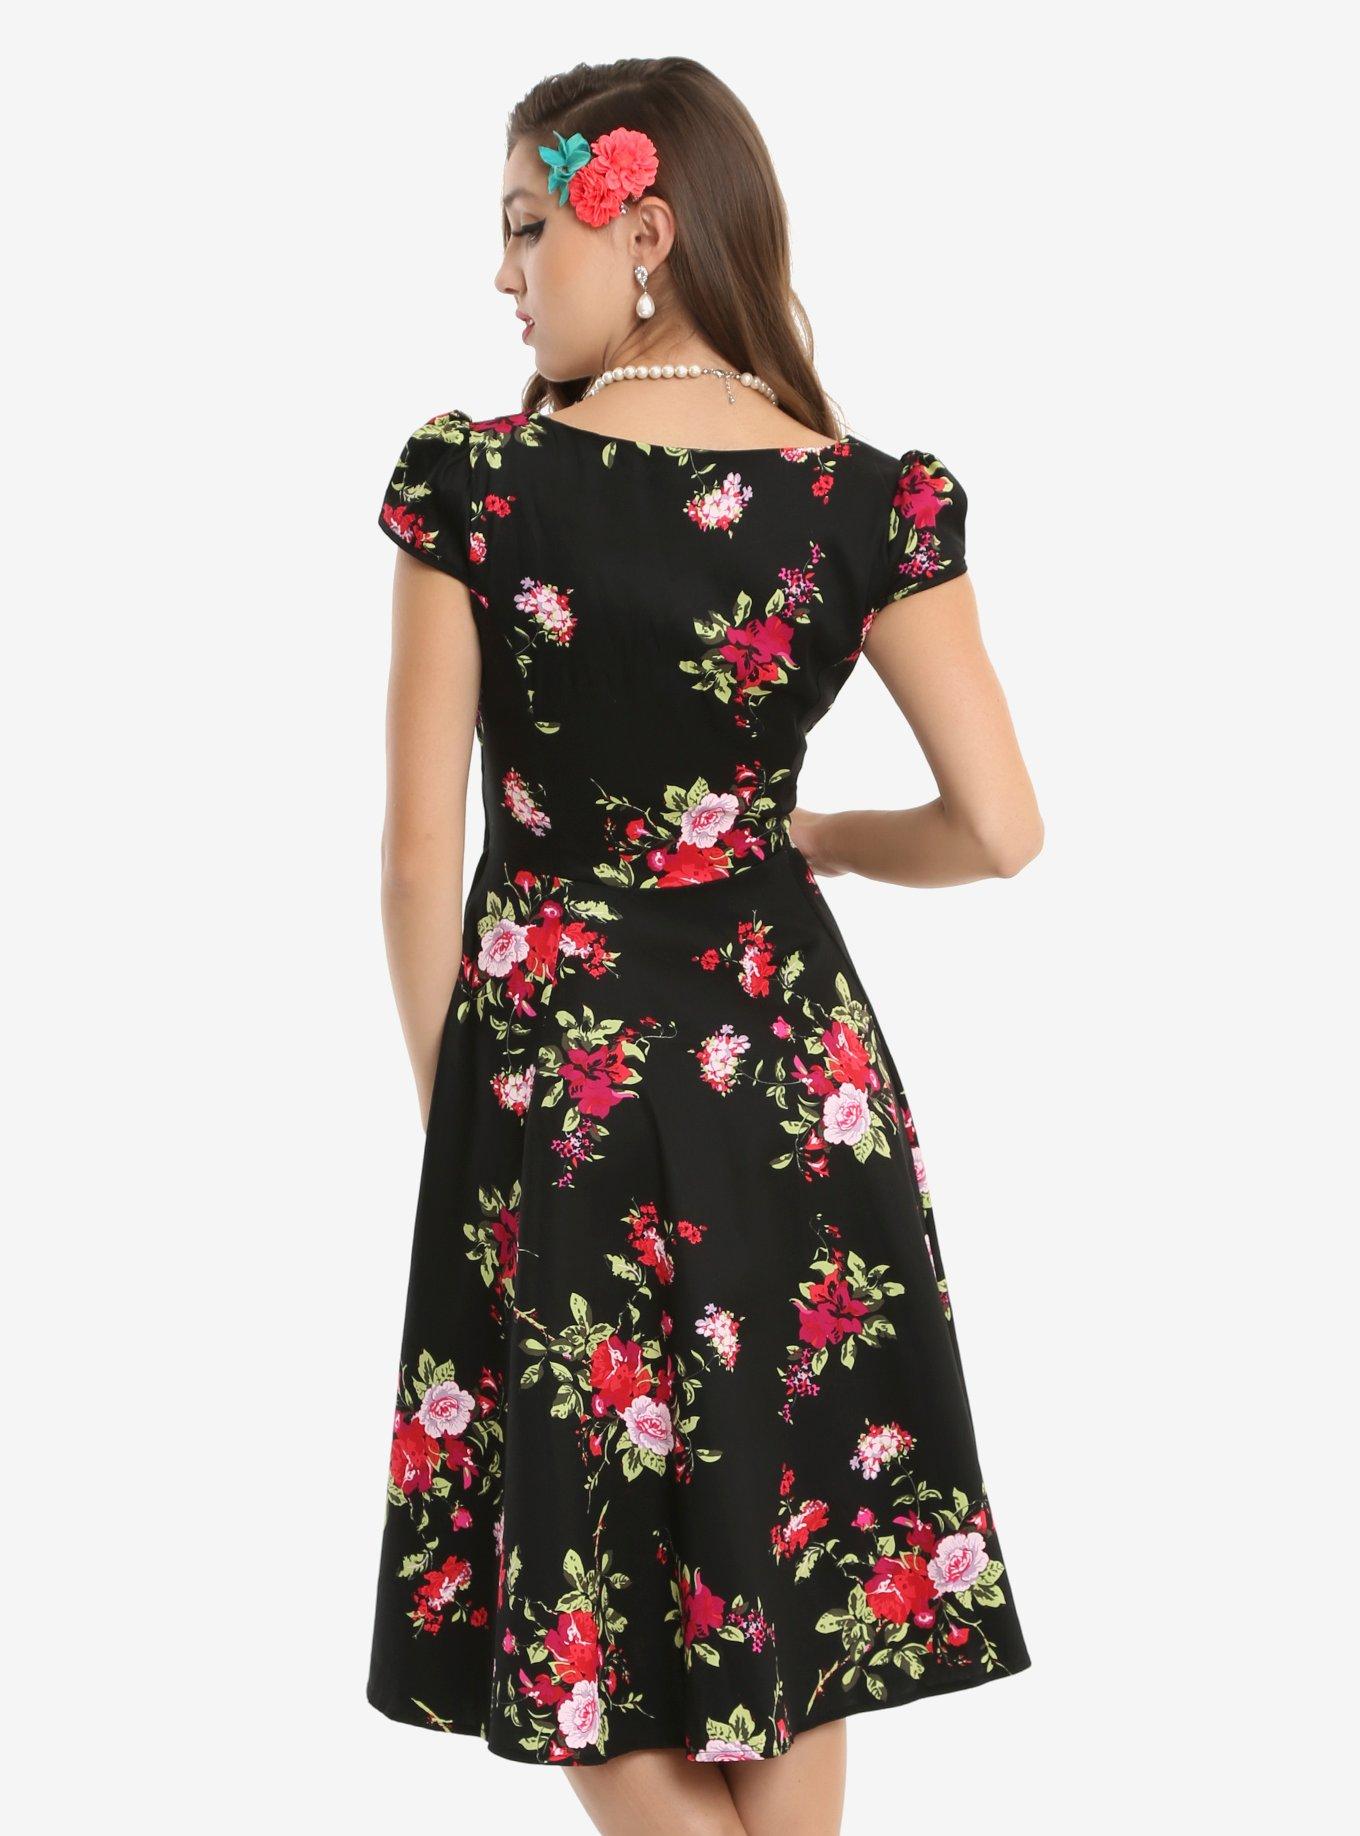 Black Cap Sleeve Floral Swing Dress, , alternate